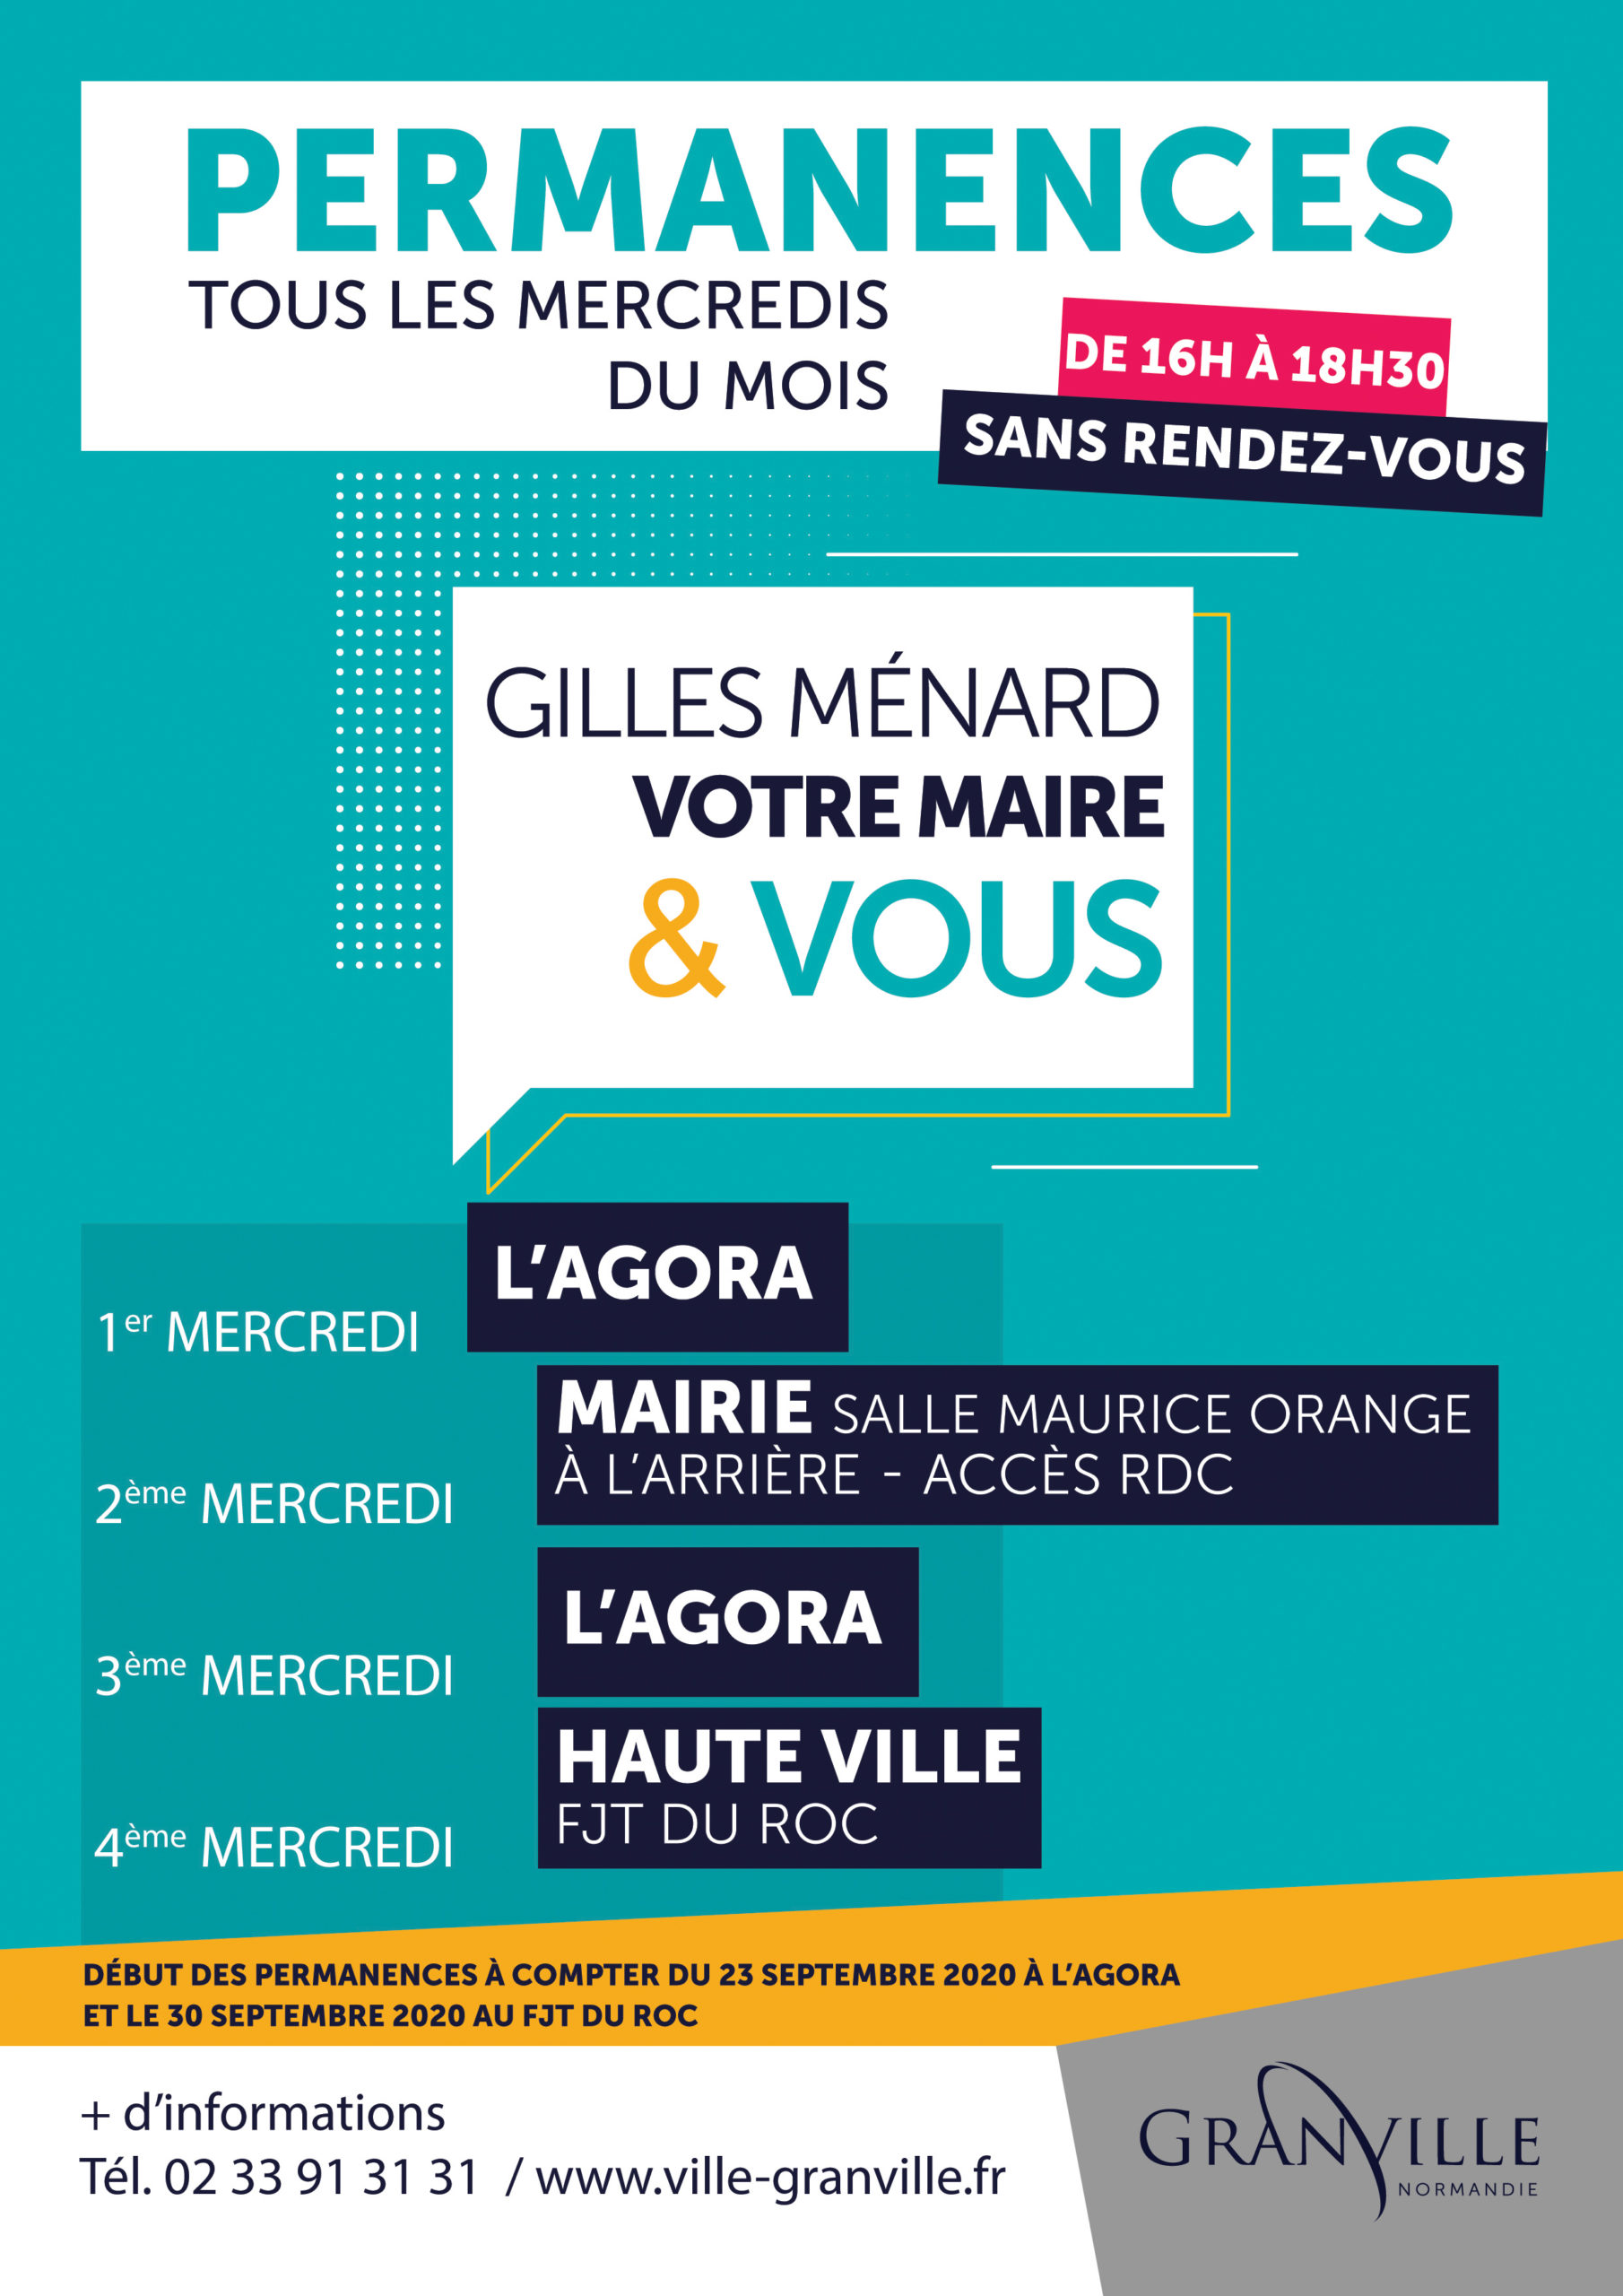 Gilles Ménard recevra les administrés sans rendez-vous tous les mercredis du mois, de 16h à 18h30, en différents lieux de Granville, à compter du 23 septembre 2020.